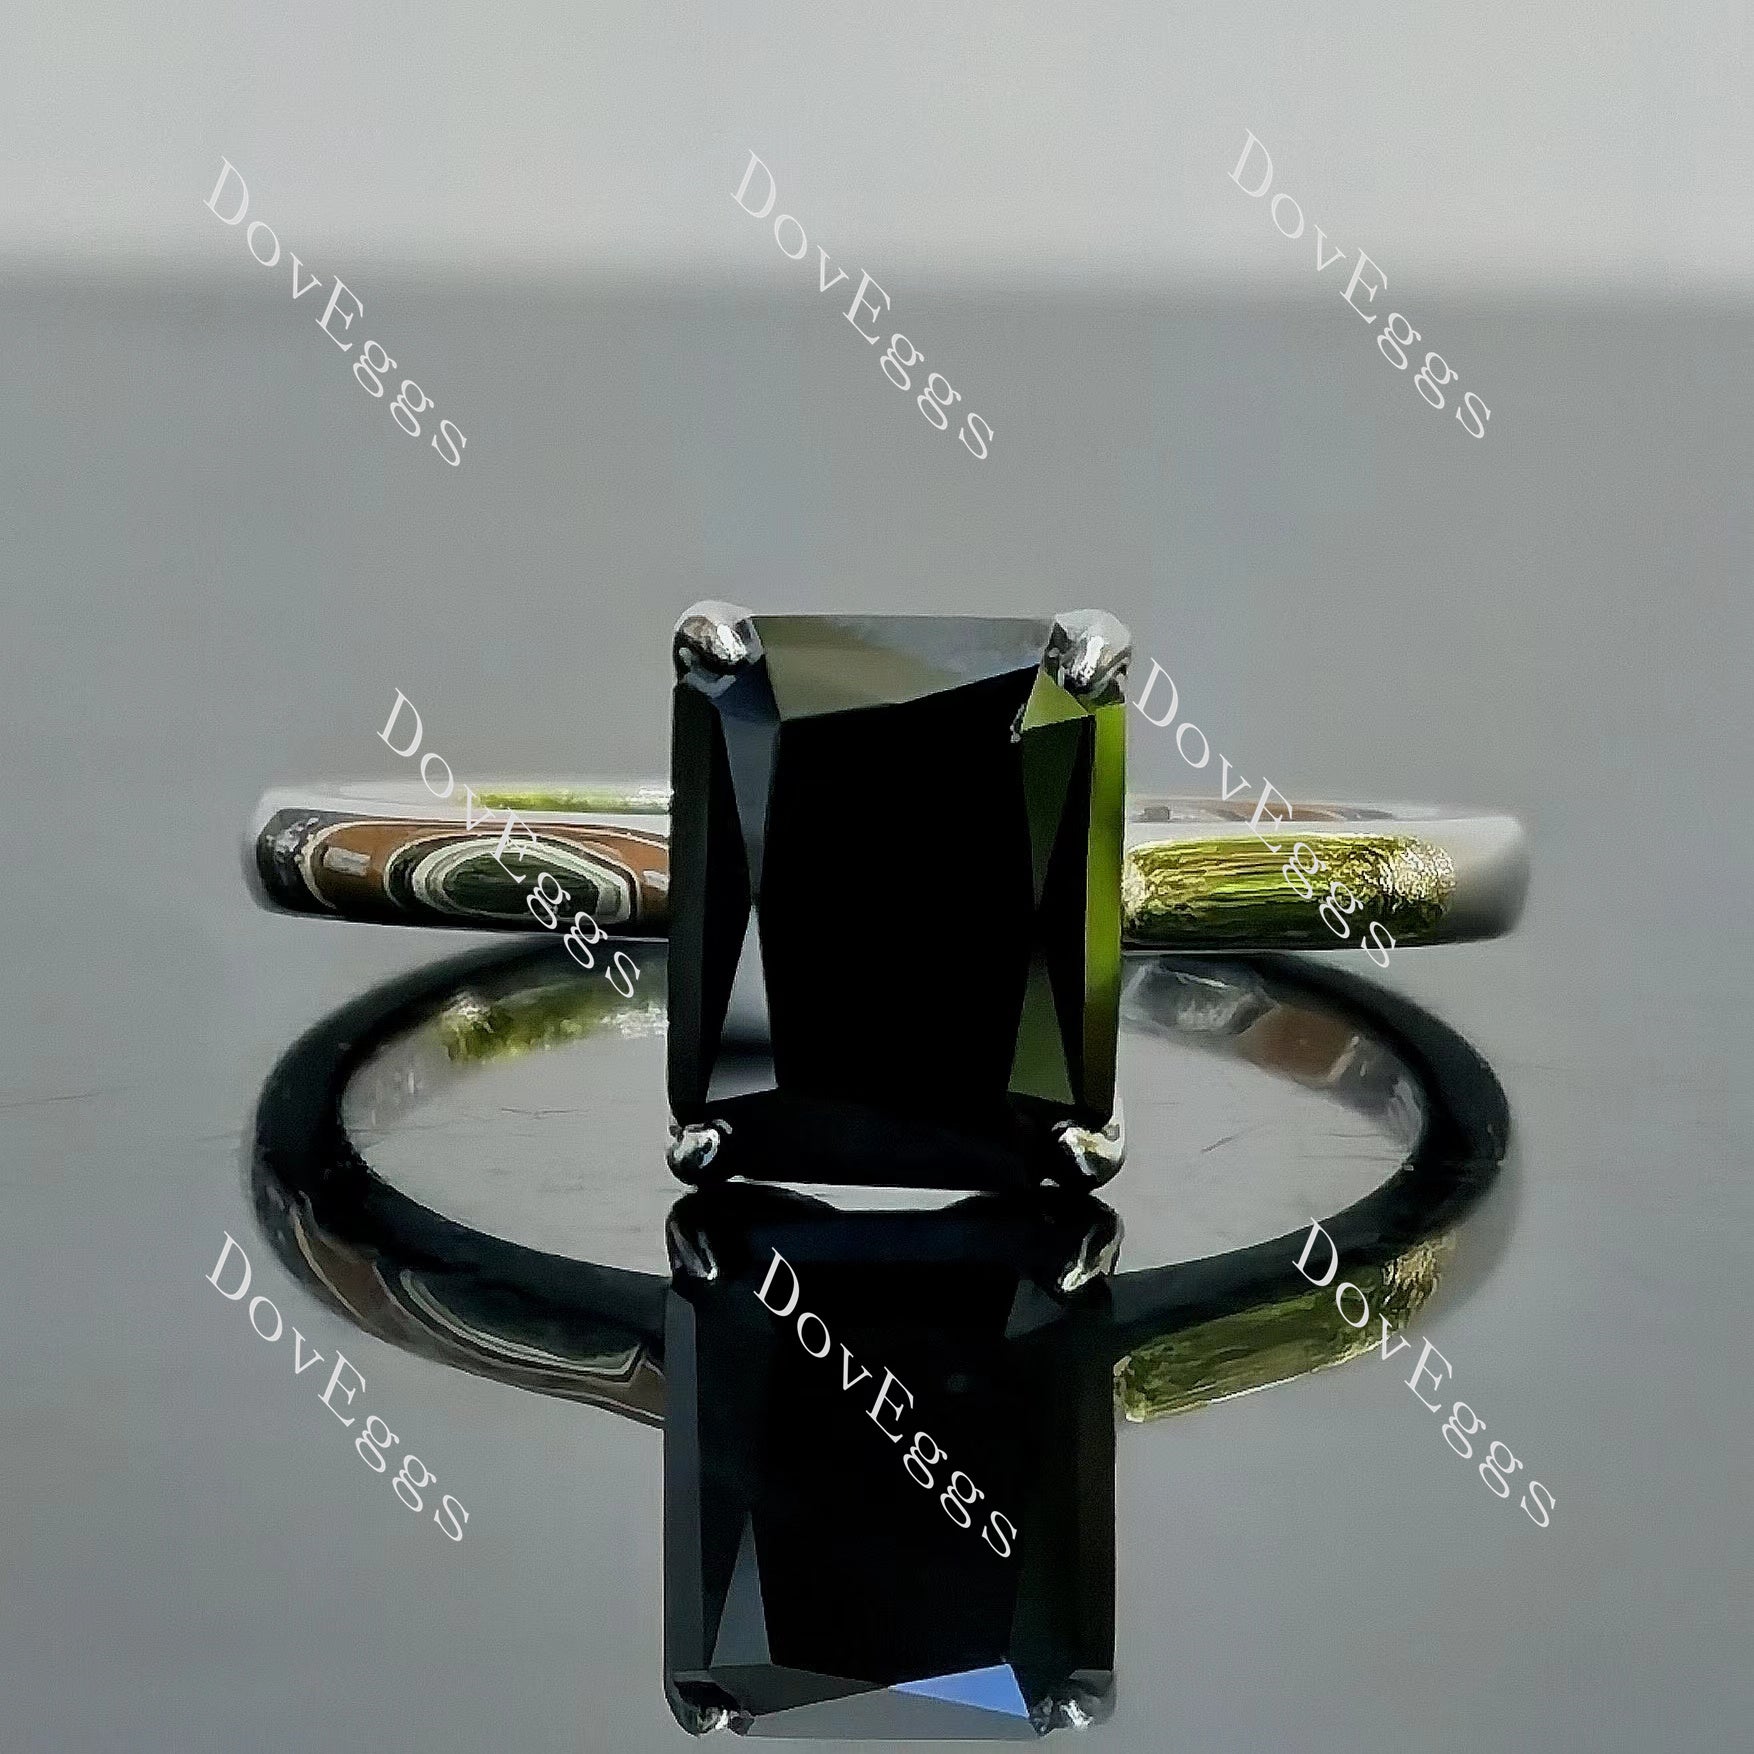 Doveggs radiant solitaire black moissanite engagement ring